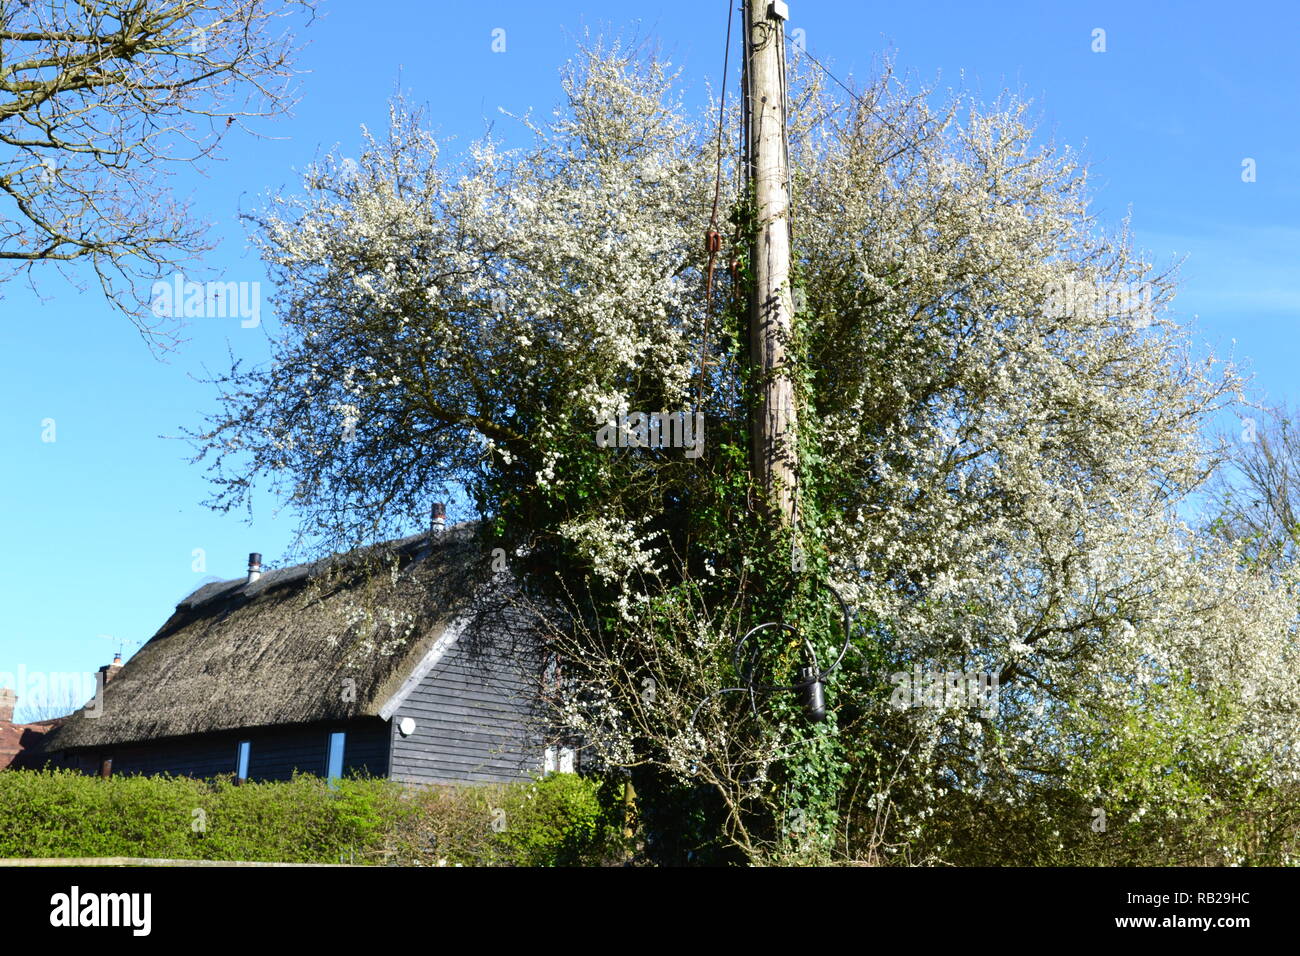 Blackthorn est l'un des premiers arbres/arbustes à fleurs en rafale à l'état sauvage. Voici une grande culture du poteau télégraphique historique, Hever dans le Kent Banque D'Images